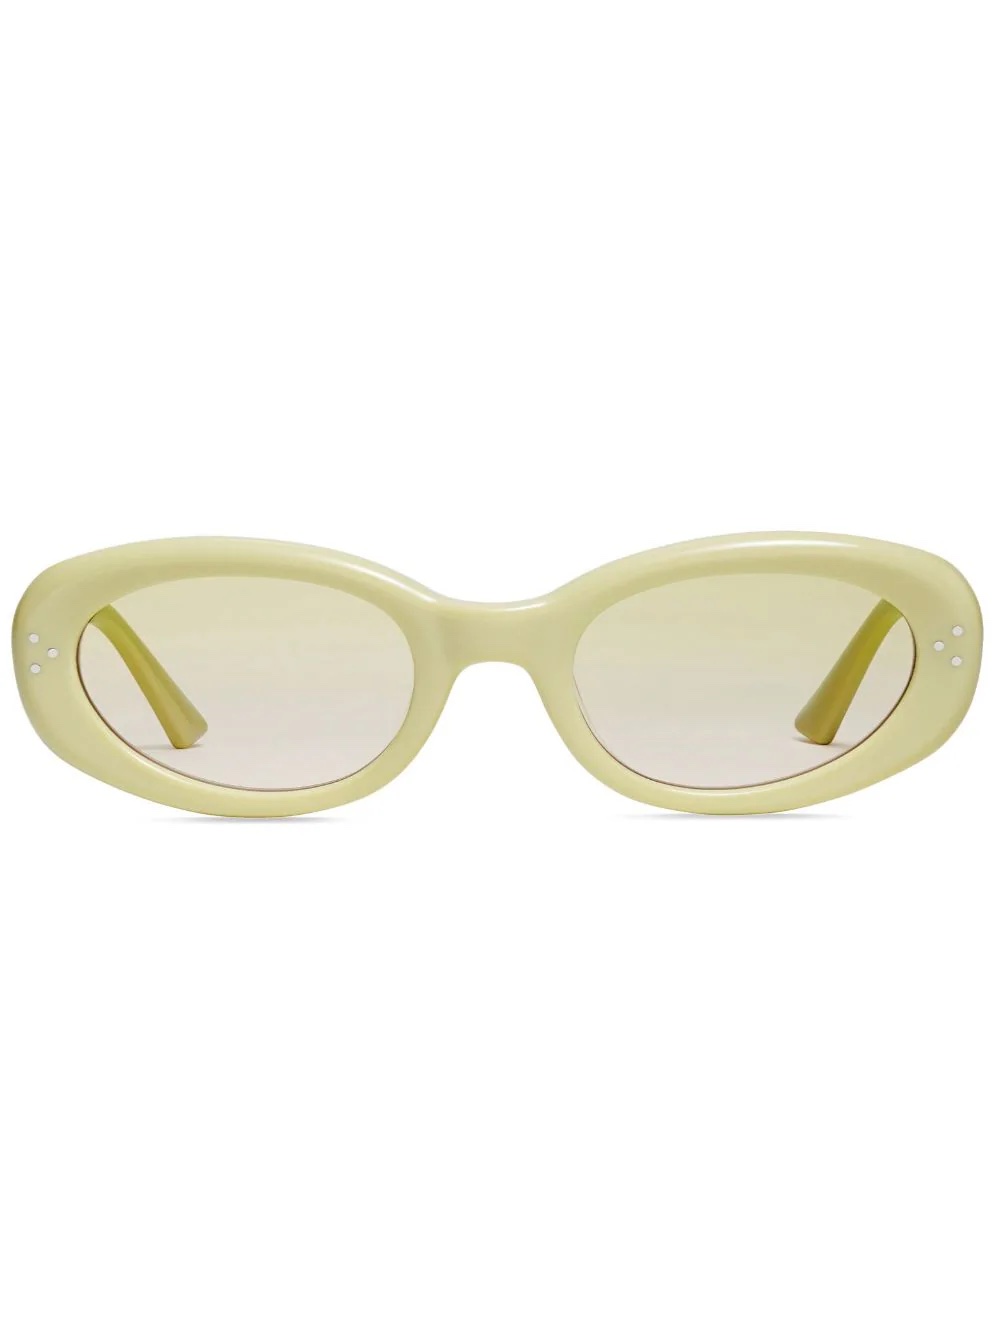 Cremefarbene Sonnenbrille mit ovalem Rahmen